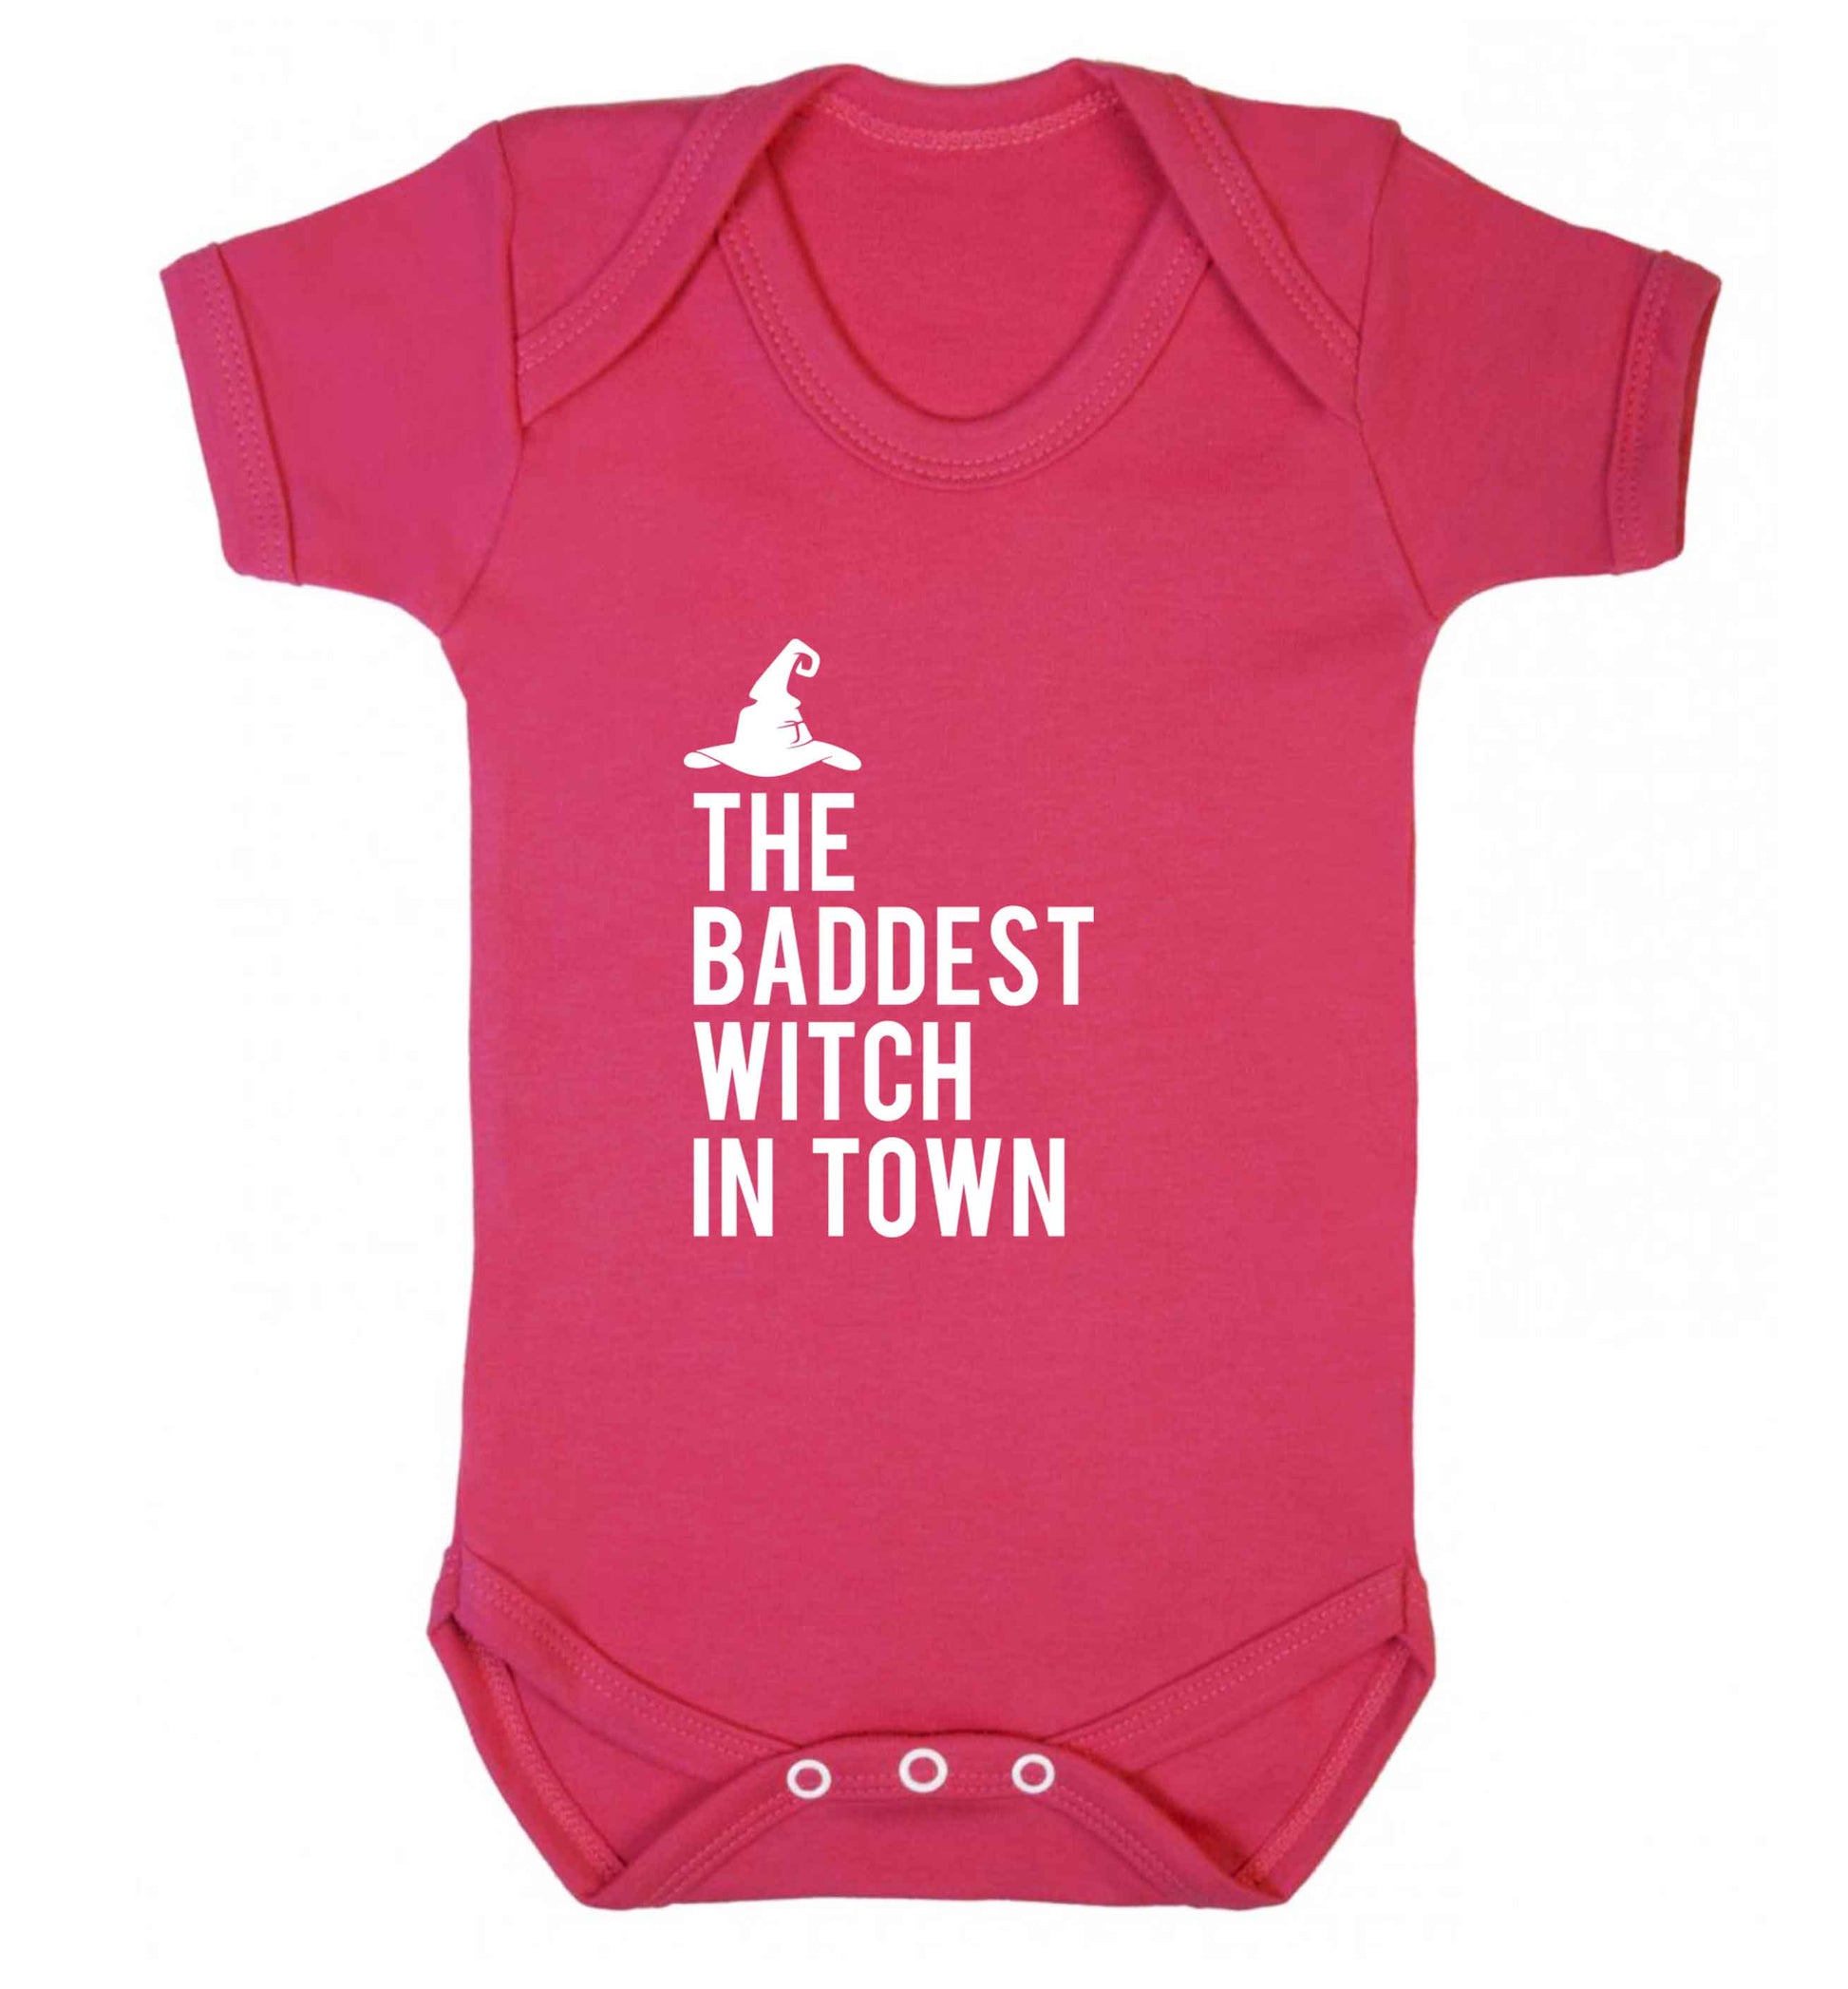 Badest witch in town baby vest dark pink 18-24 months